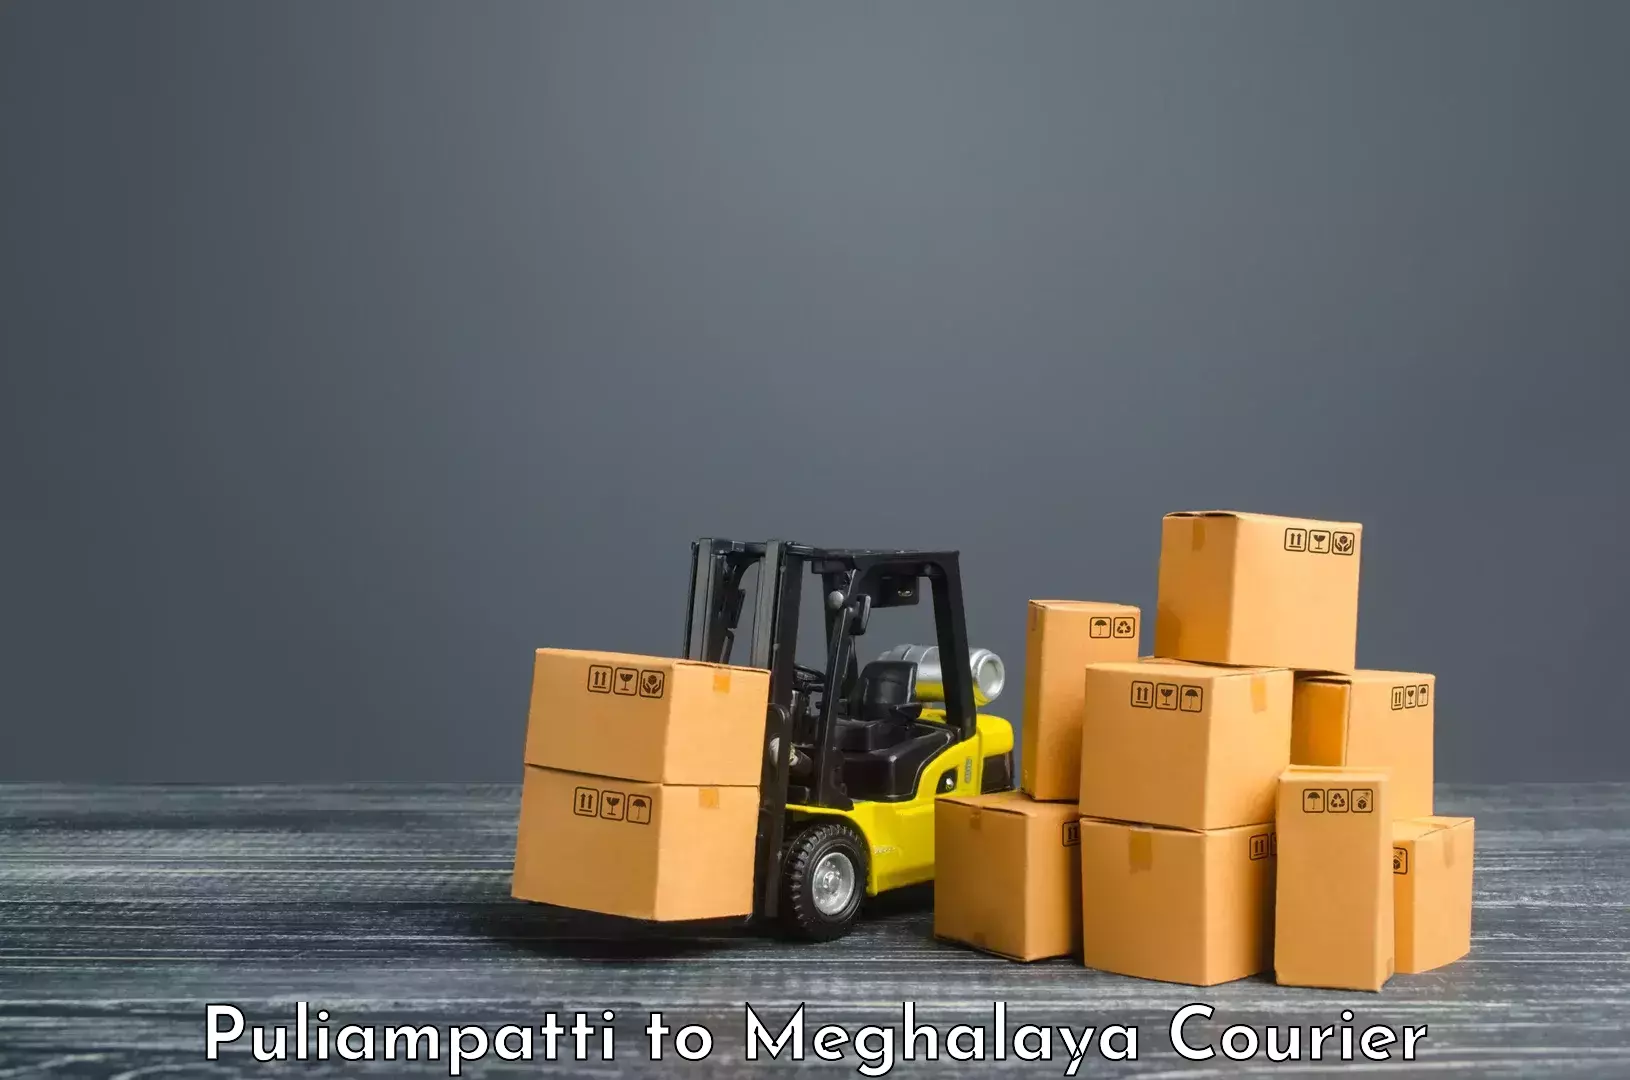 Express logistics providers Puliampatti to Meghalaya